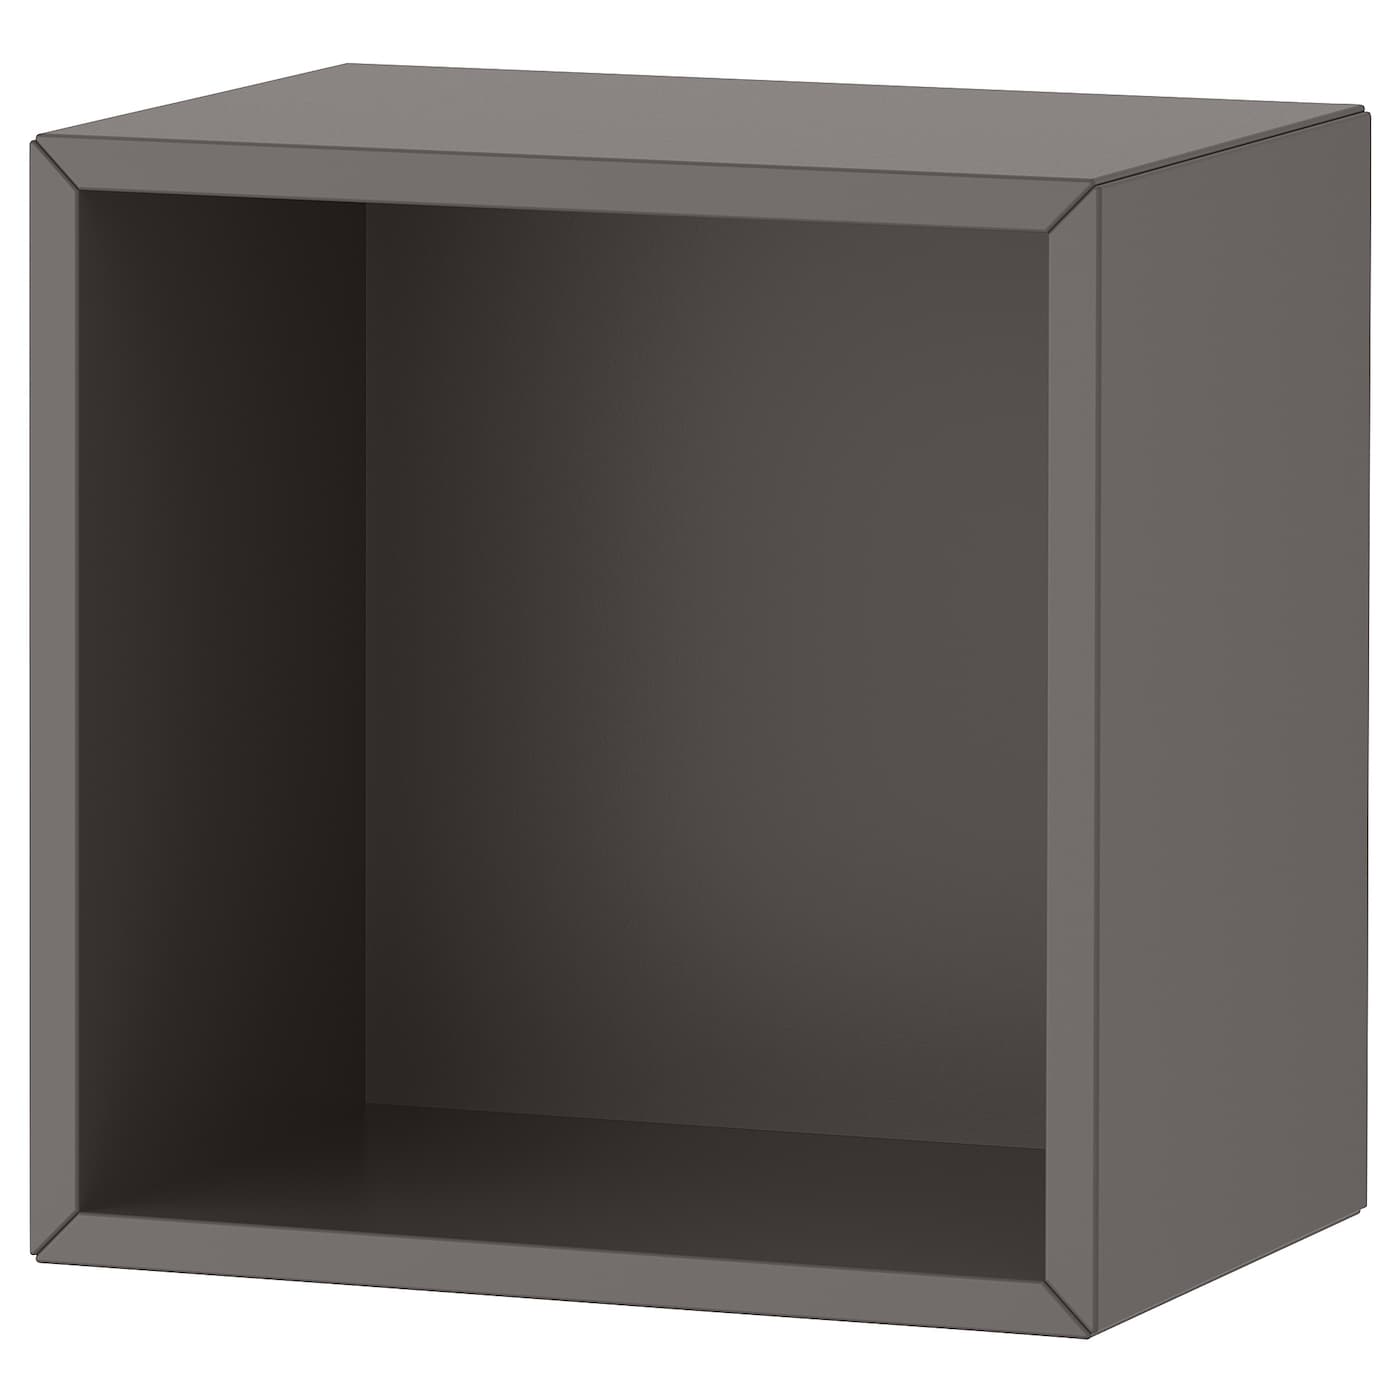 Настенный стеллаж - IKEA EKET. 35x25x35 см, темно-серый, ЭКЕТ ИКЕА